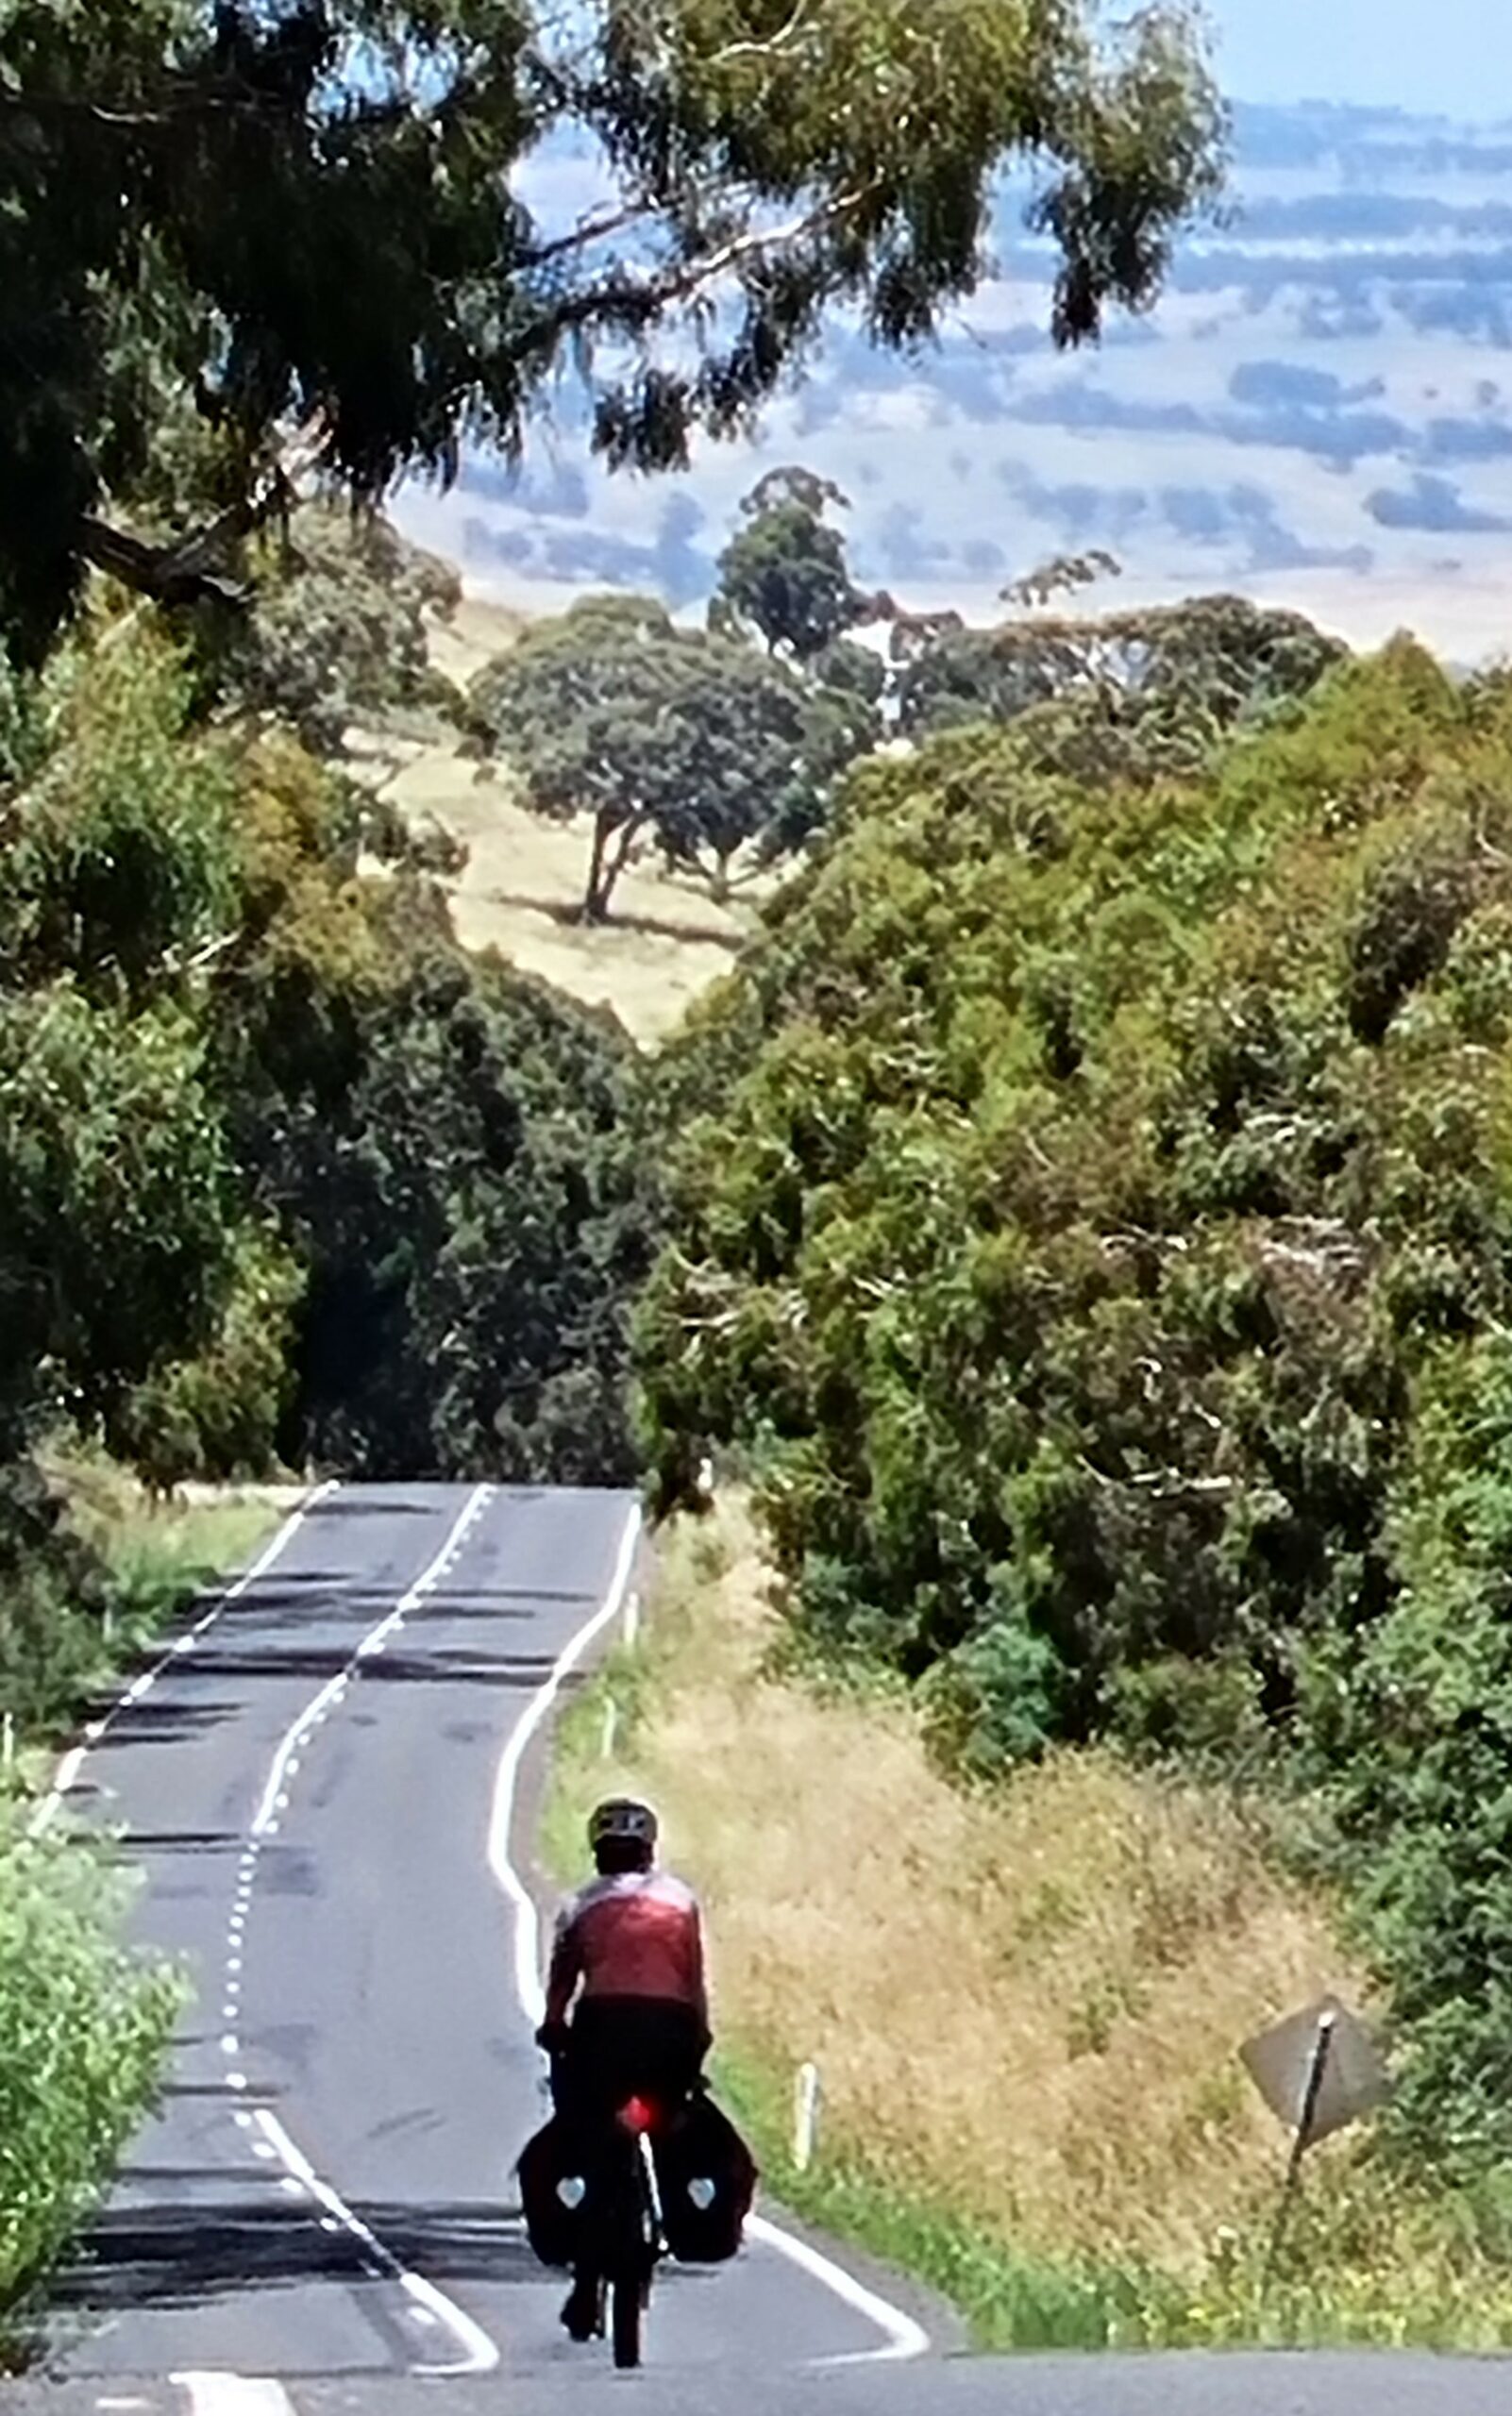 A woman riding a vivente bike on a road